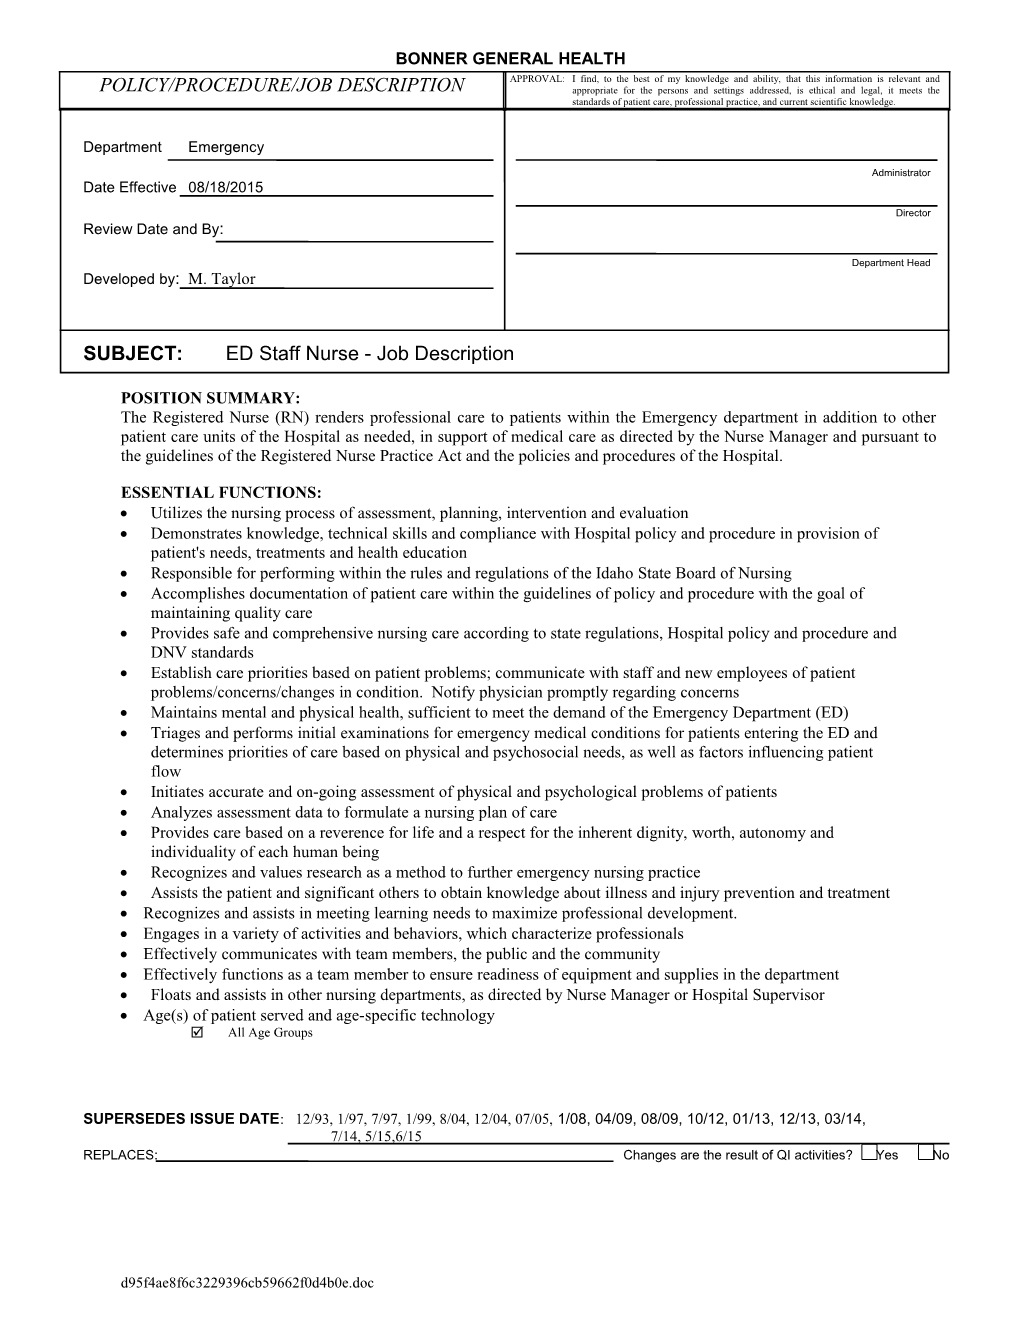 Subject:Edstaffrn - Job Description